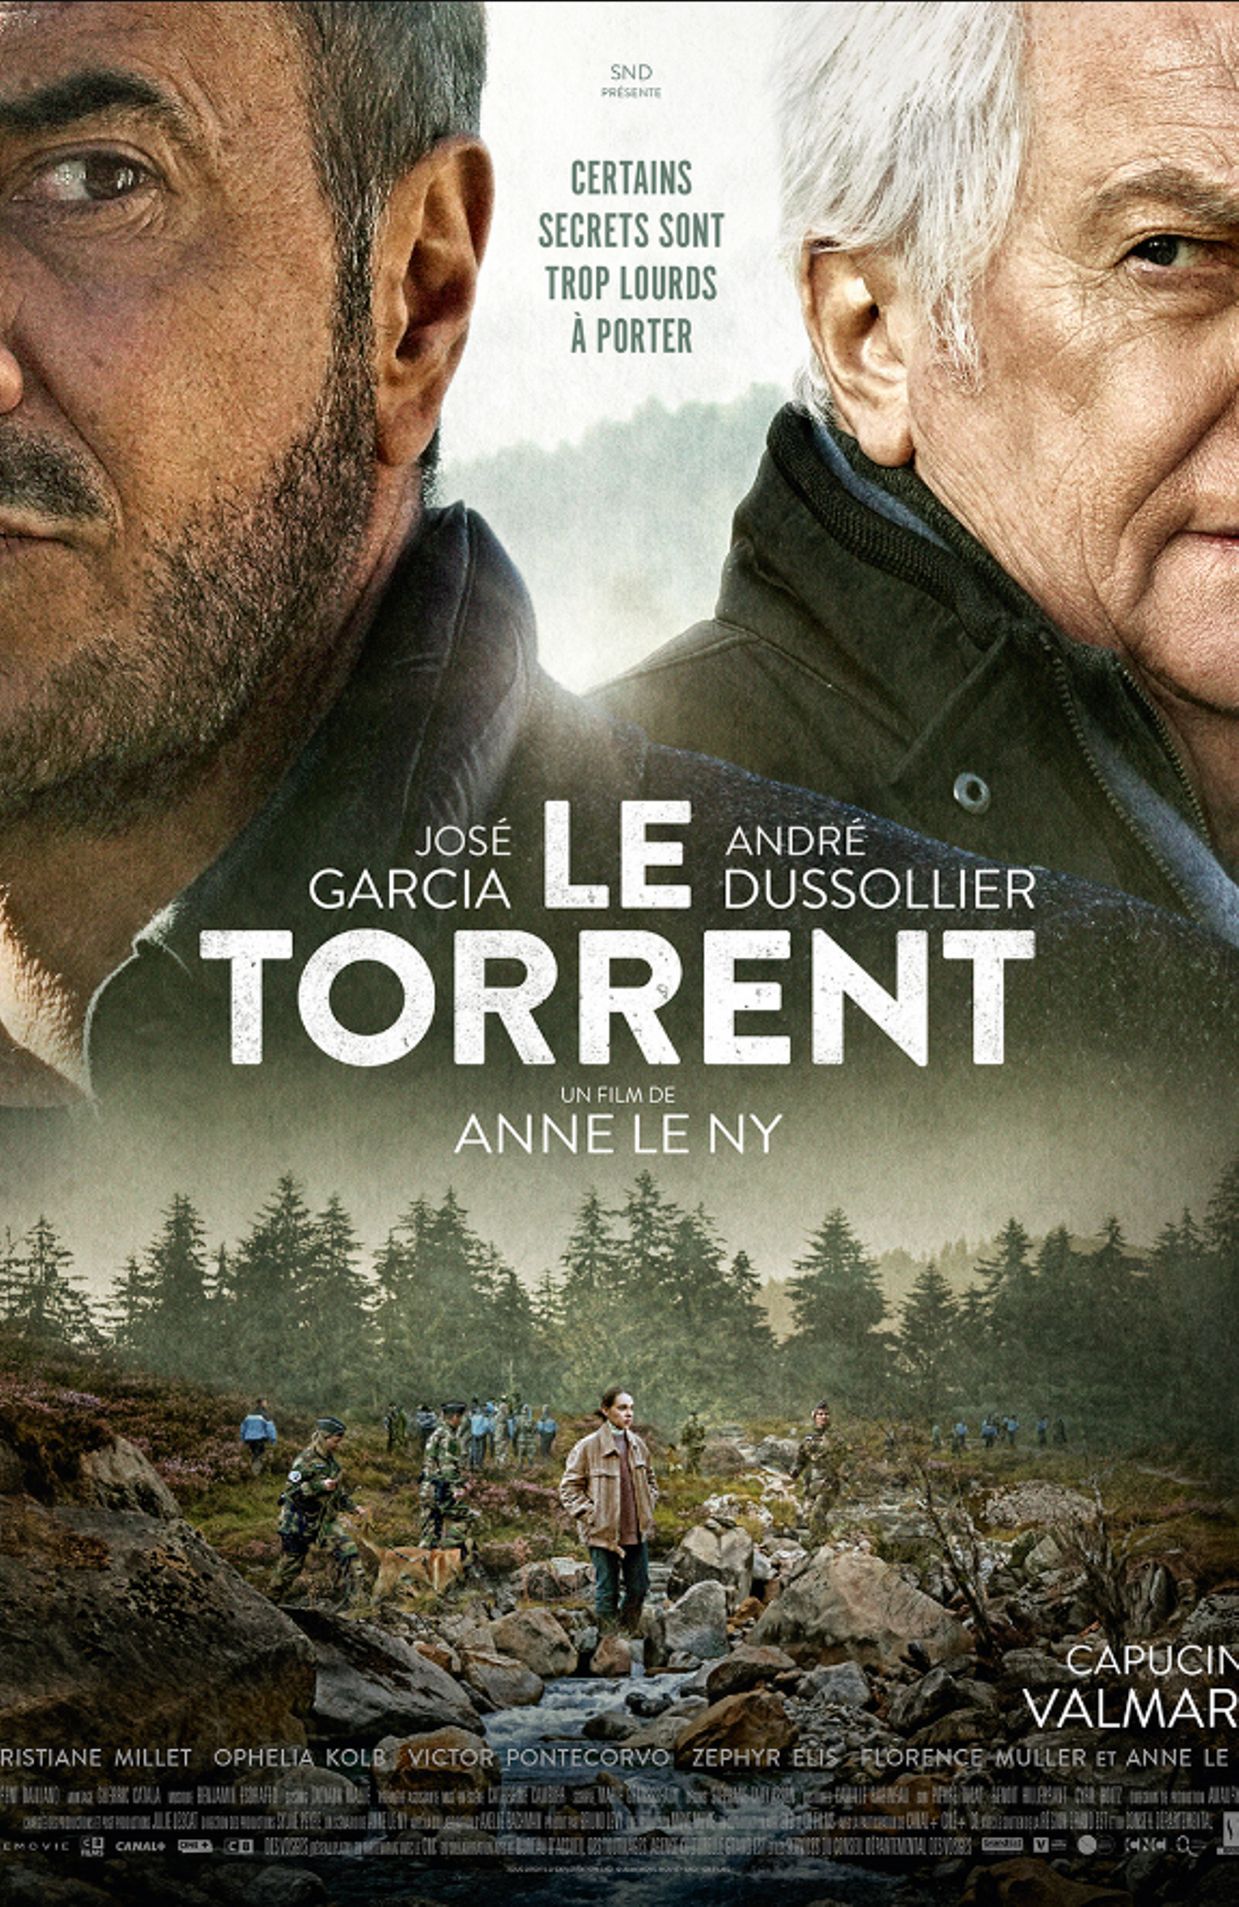 L'affiche du film "Le Torrent"